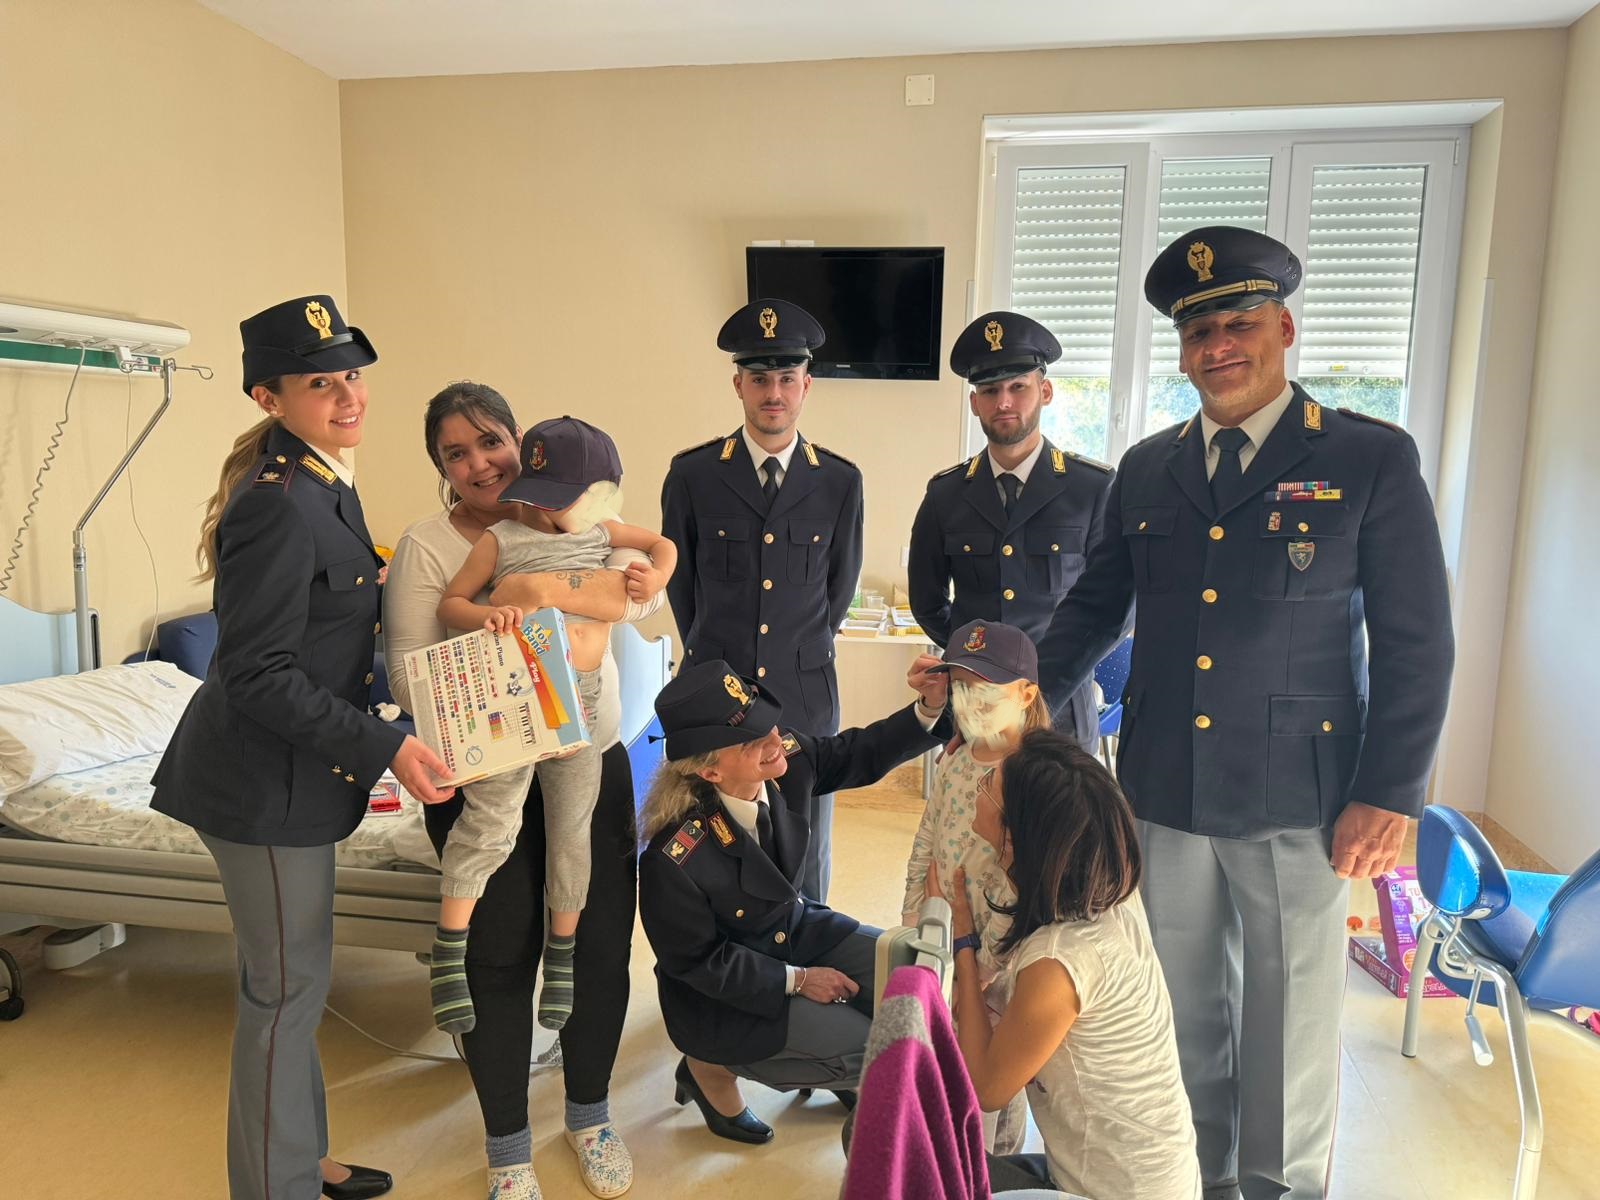 Il Natale della Polizia in Pediatria: i regali in divisa ai bimbi ricoverati1